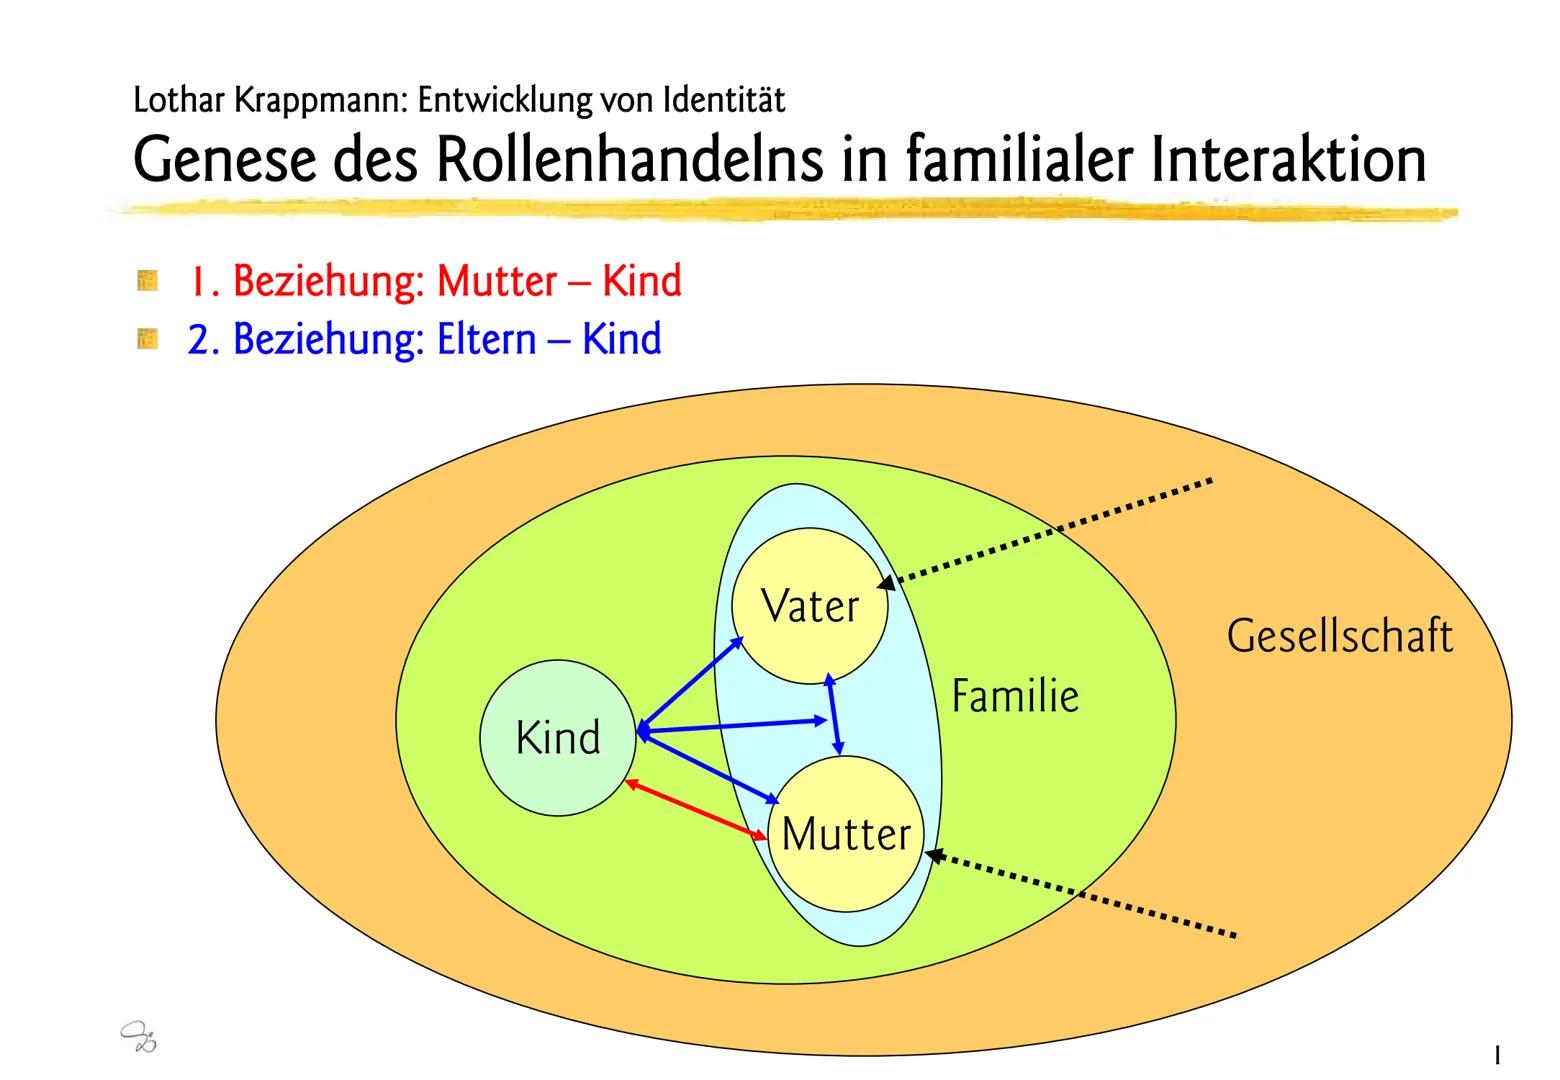 Lothar Krappmann: Rollen
Sozialisation und soziale Rolle, allgemein
Sozialisation:
Vorgang durch den das Kind in die Rollen eingeführt wird,